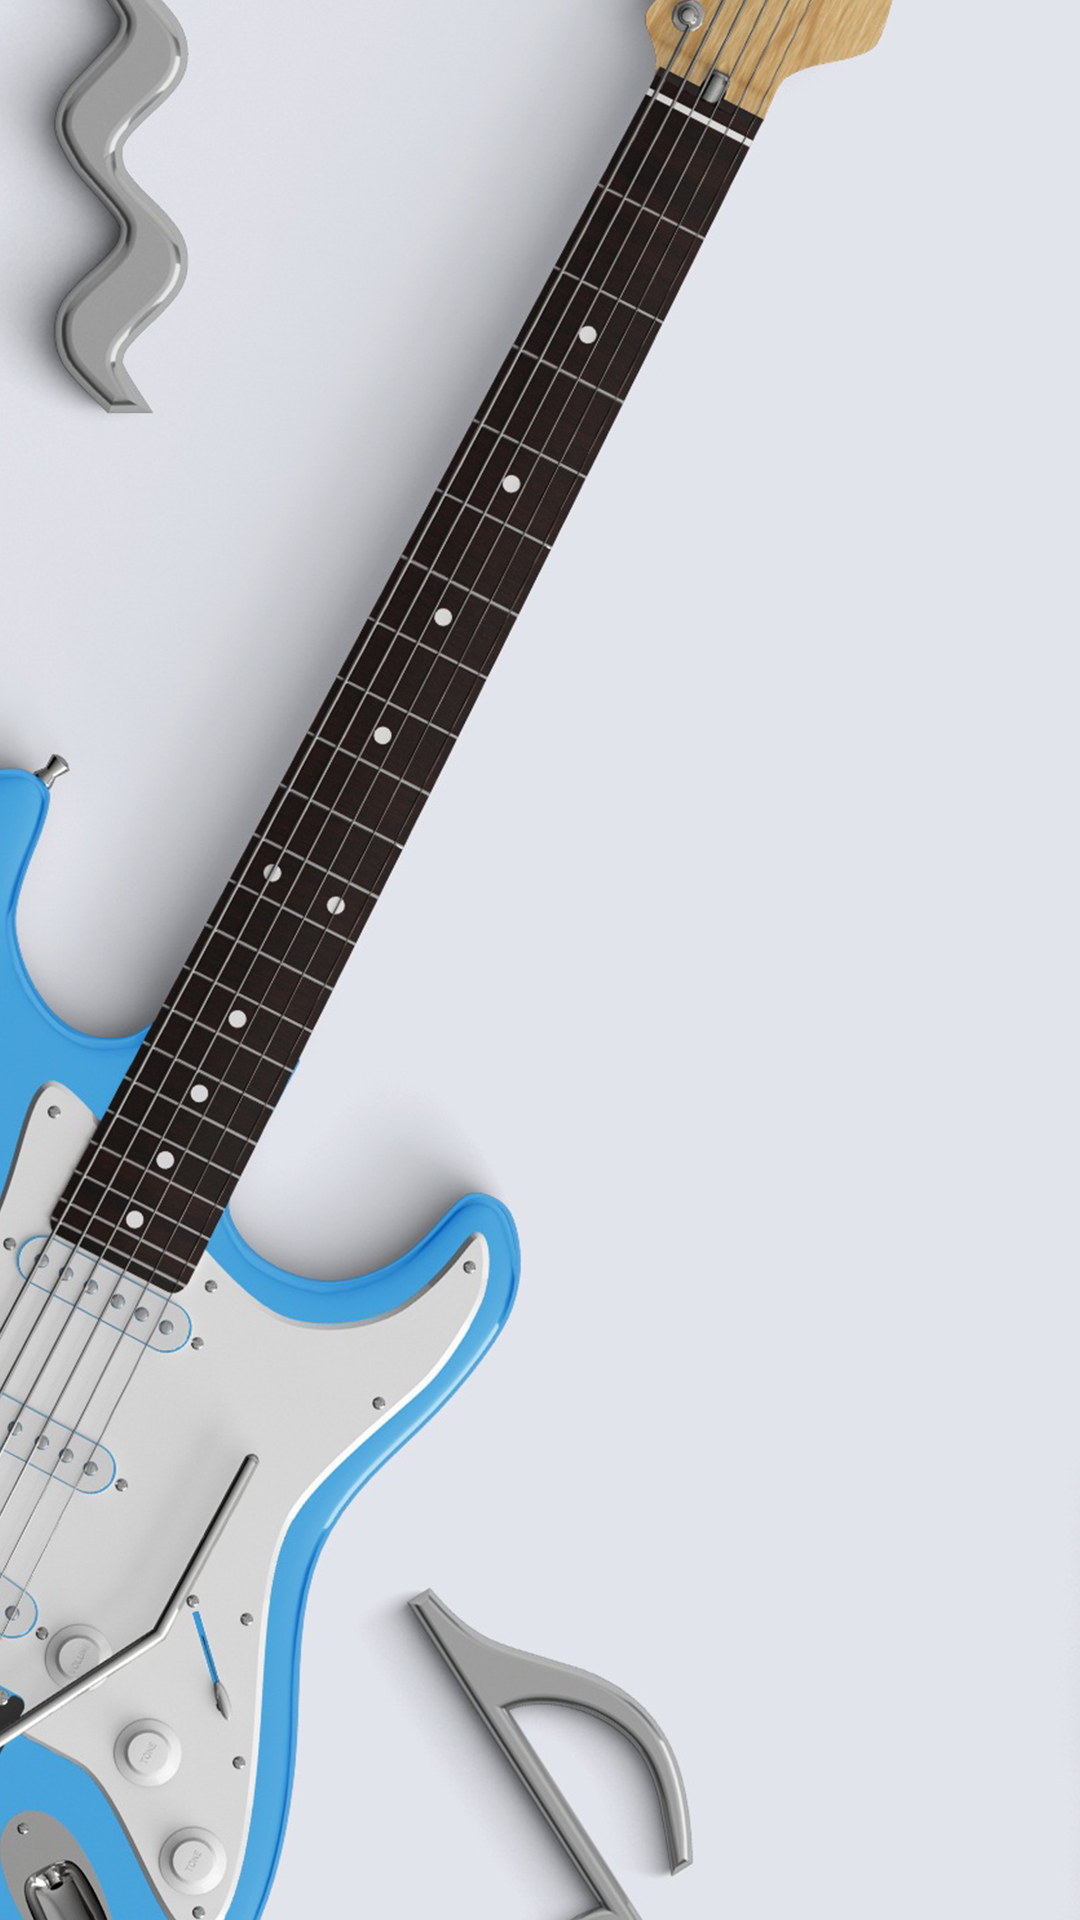 gitarre wallpaper hd android,gitarre,musikinstrument,elektrische gitarre,bassgitarre,gezupfte saiteninstrumente